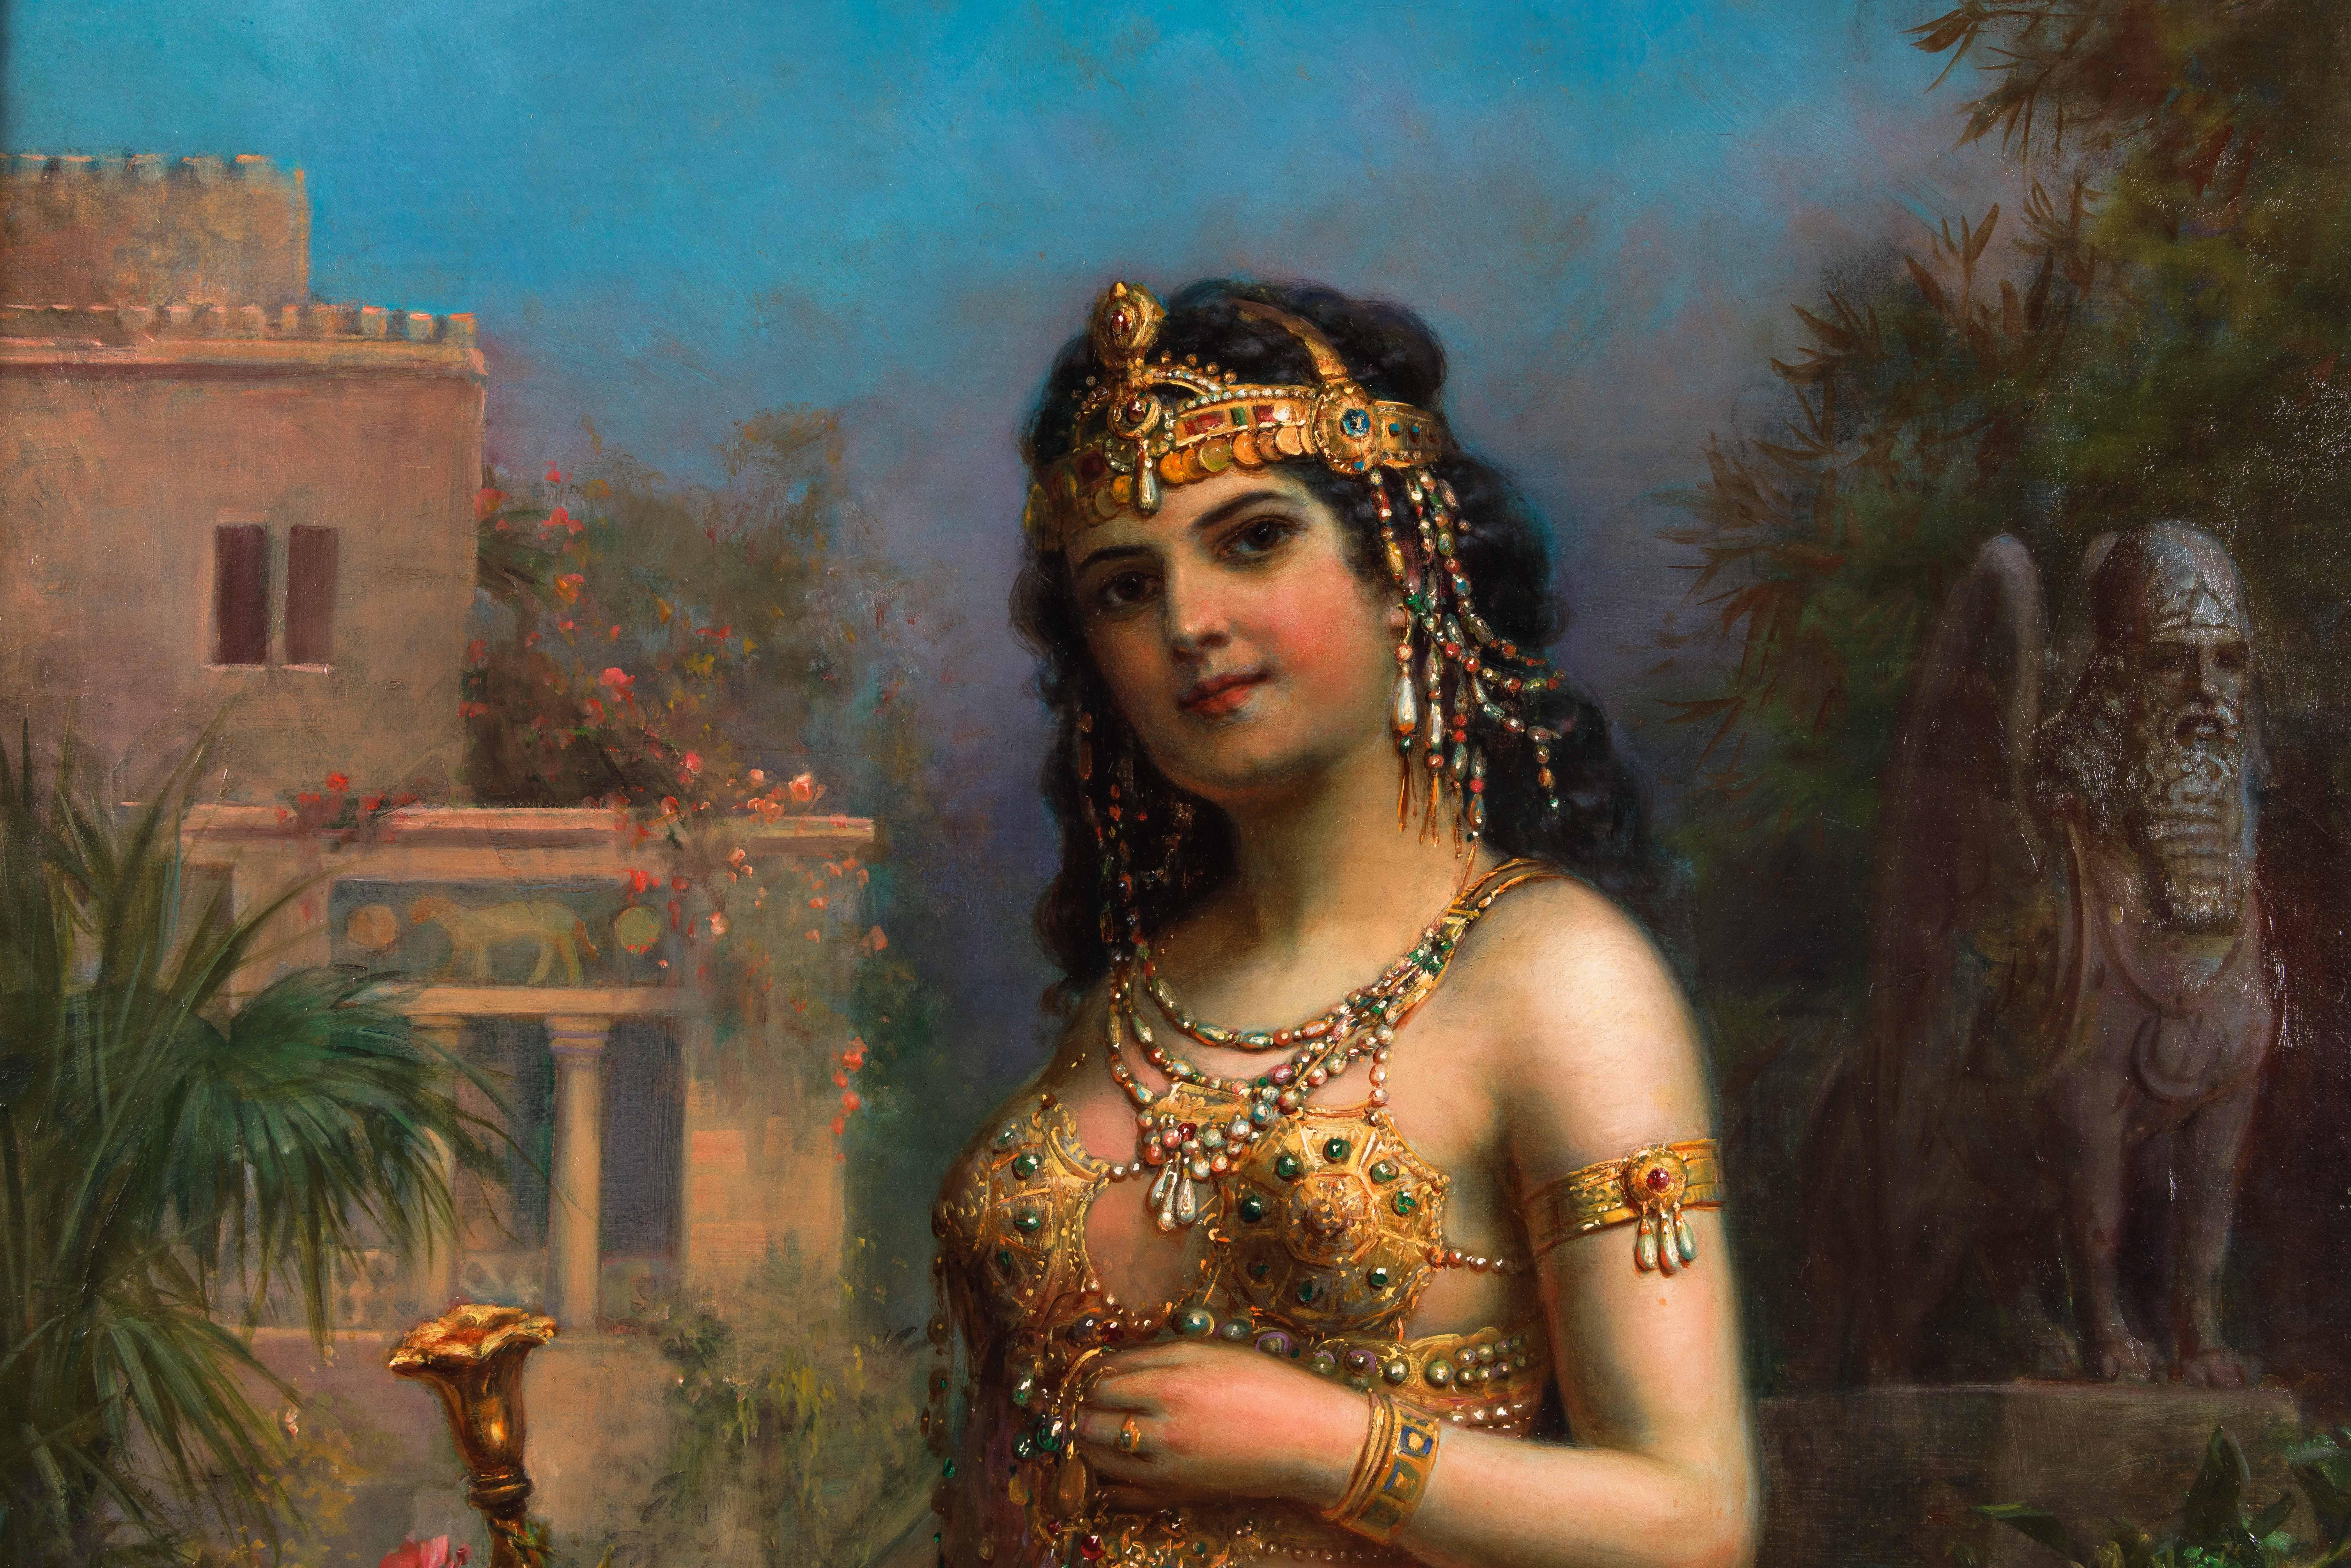 Emanuel Oberhauser (Österreicher, 1854-1919) ein außergewöhnliches Ölgemälde einer jungen orientalischen Königin oder Odaliske in voller Länge auf Leinwand, 19. Jahrhundert, um 1885

Dieses meisterhaft gemalte Kunstwerk zeigt das Porträt einer